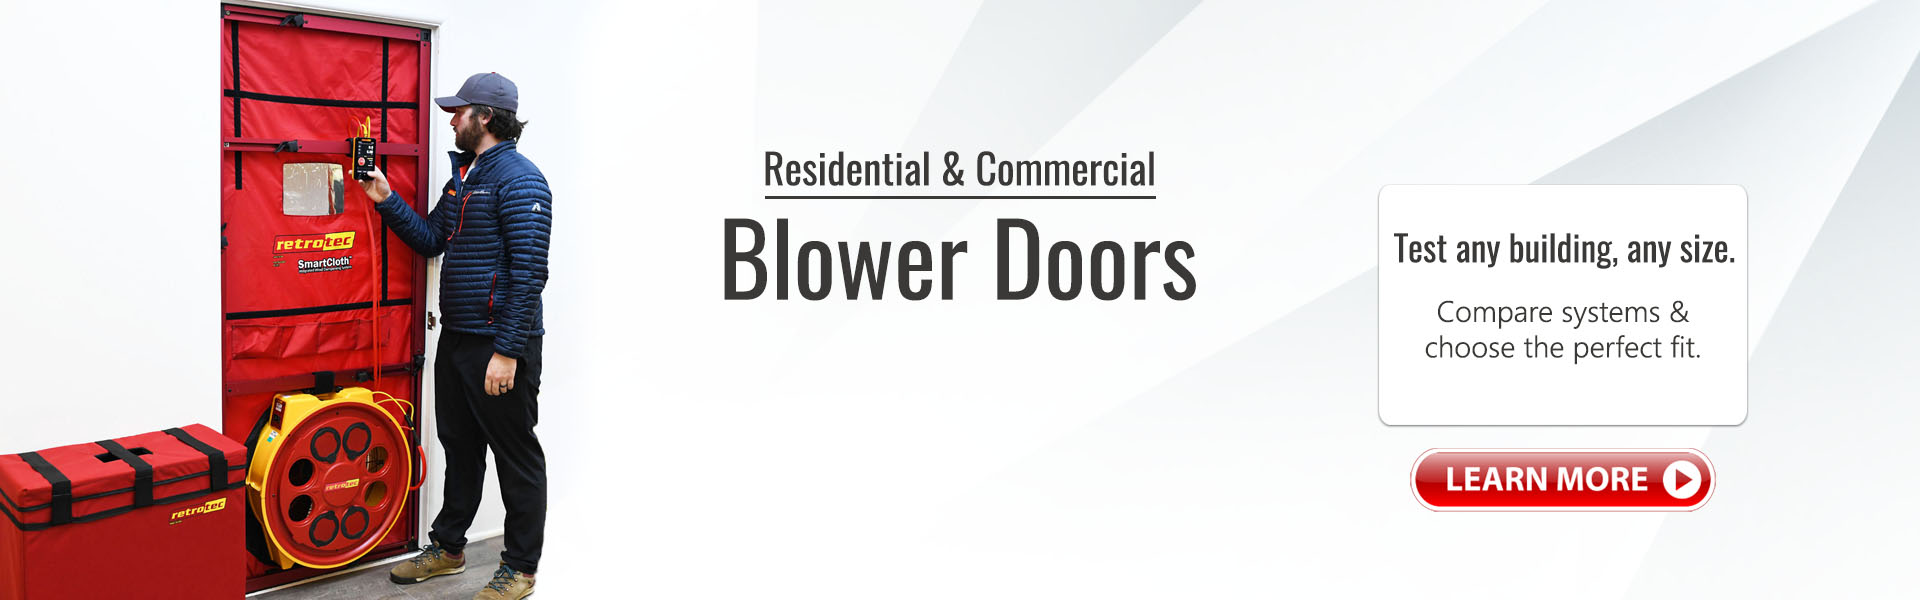 Blower Doors